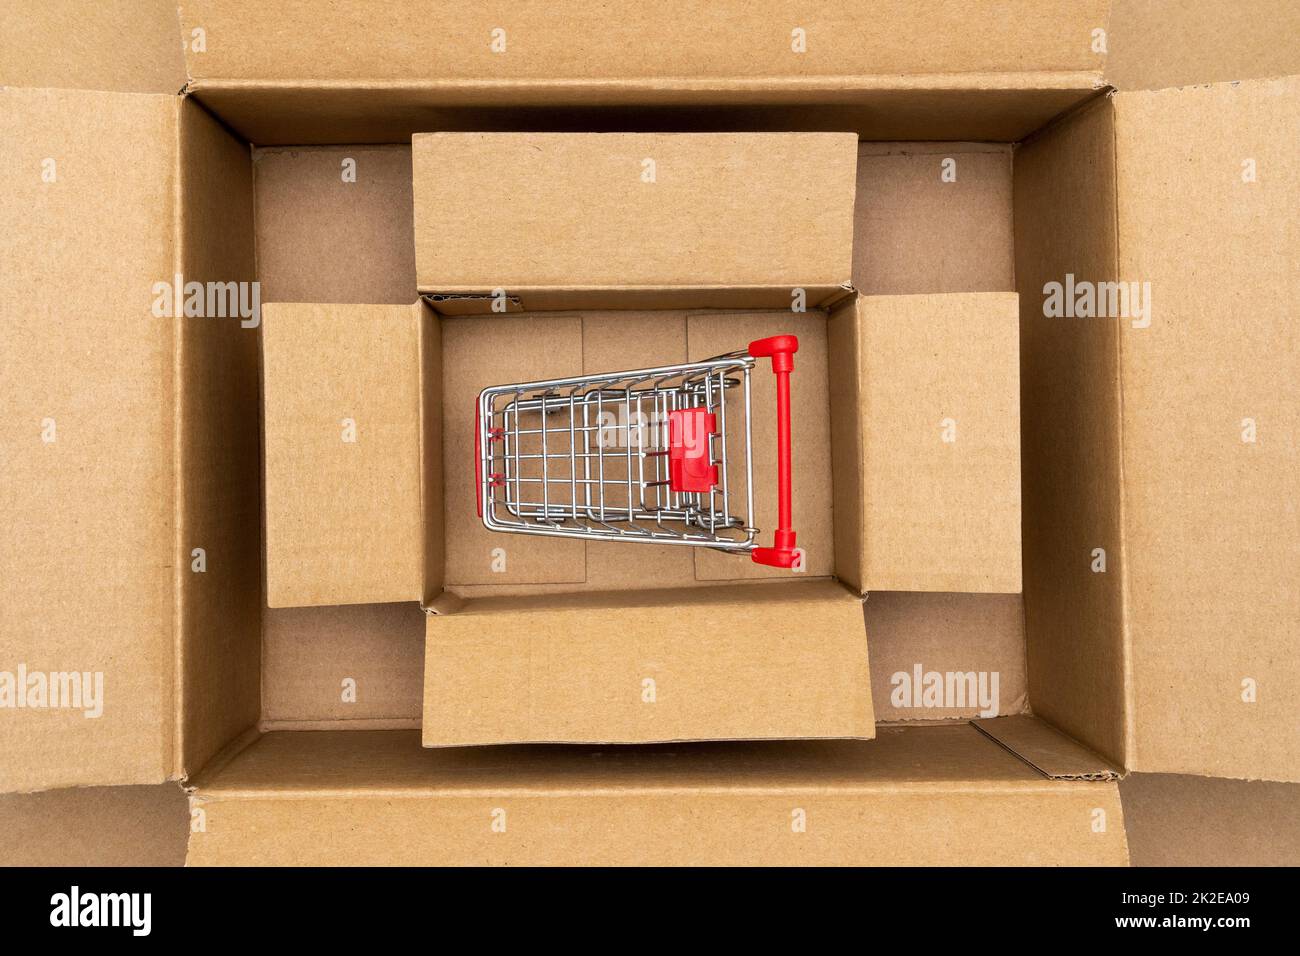 Carrello all'interno di una scatola di cartone rettangolare aperta Foto Stock